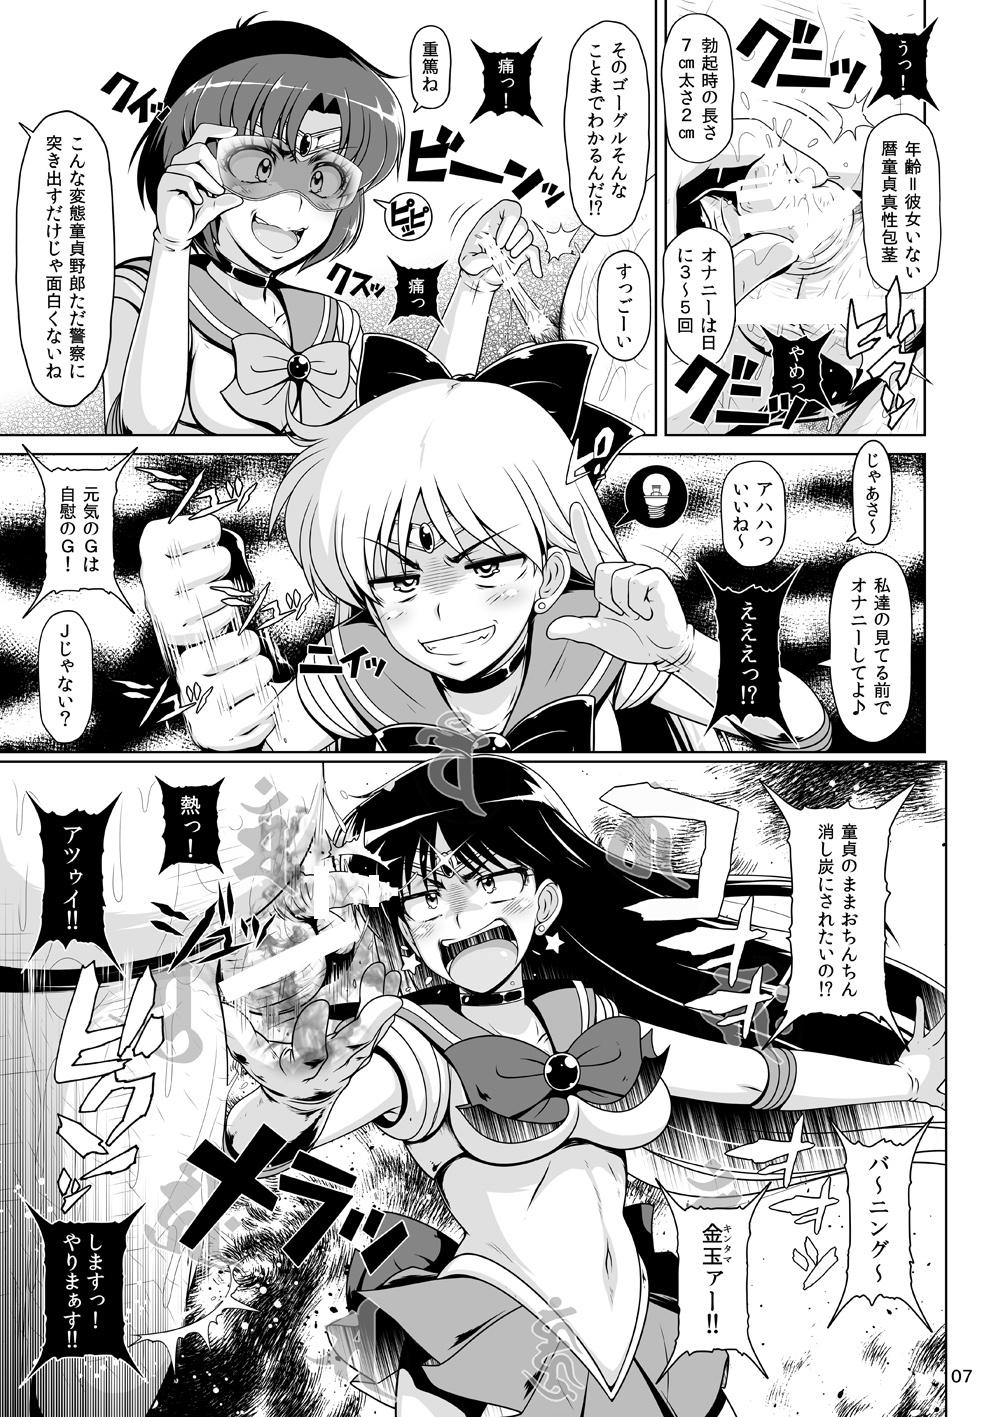 Spreading Suisei Bakuhatsu - Sailor moon Twinks - Page 6